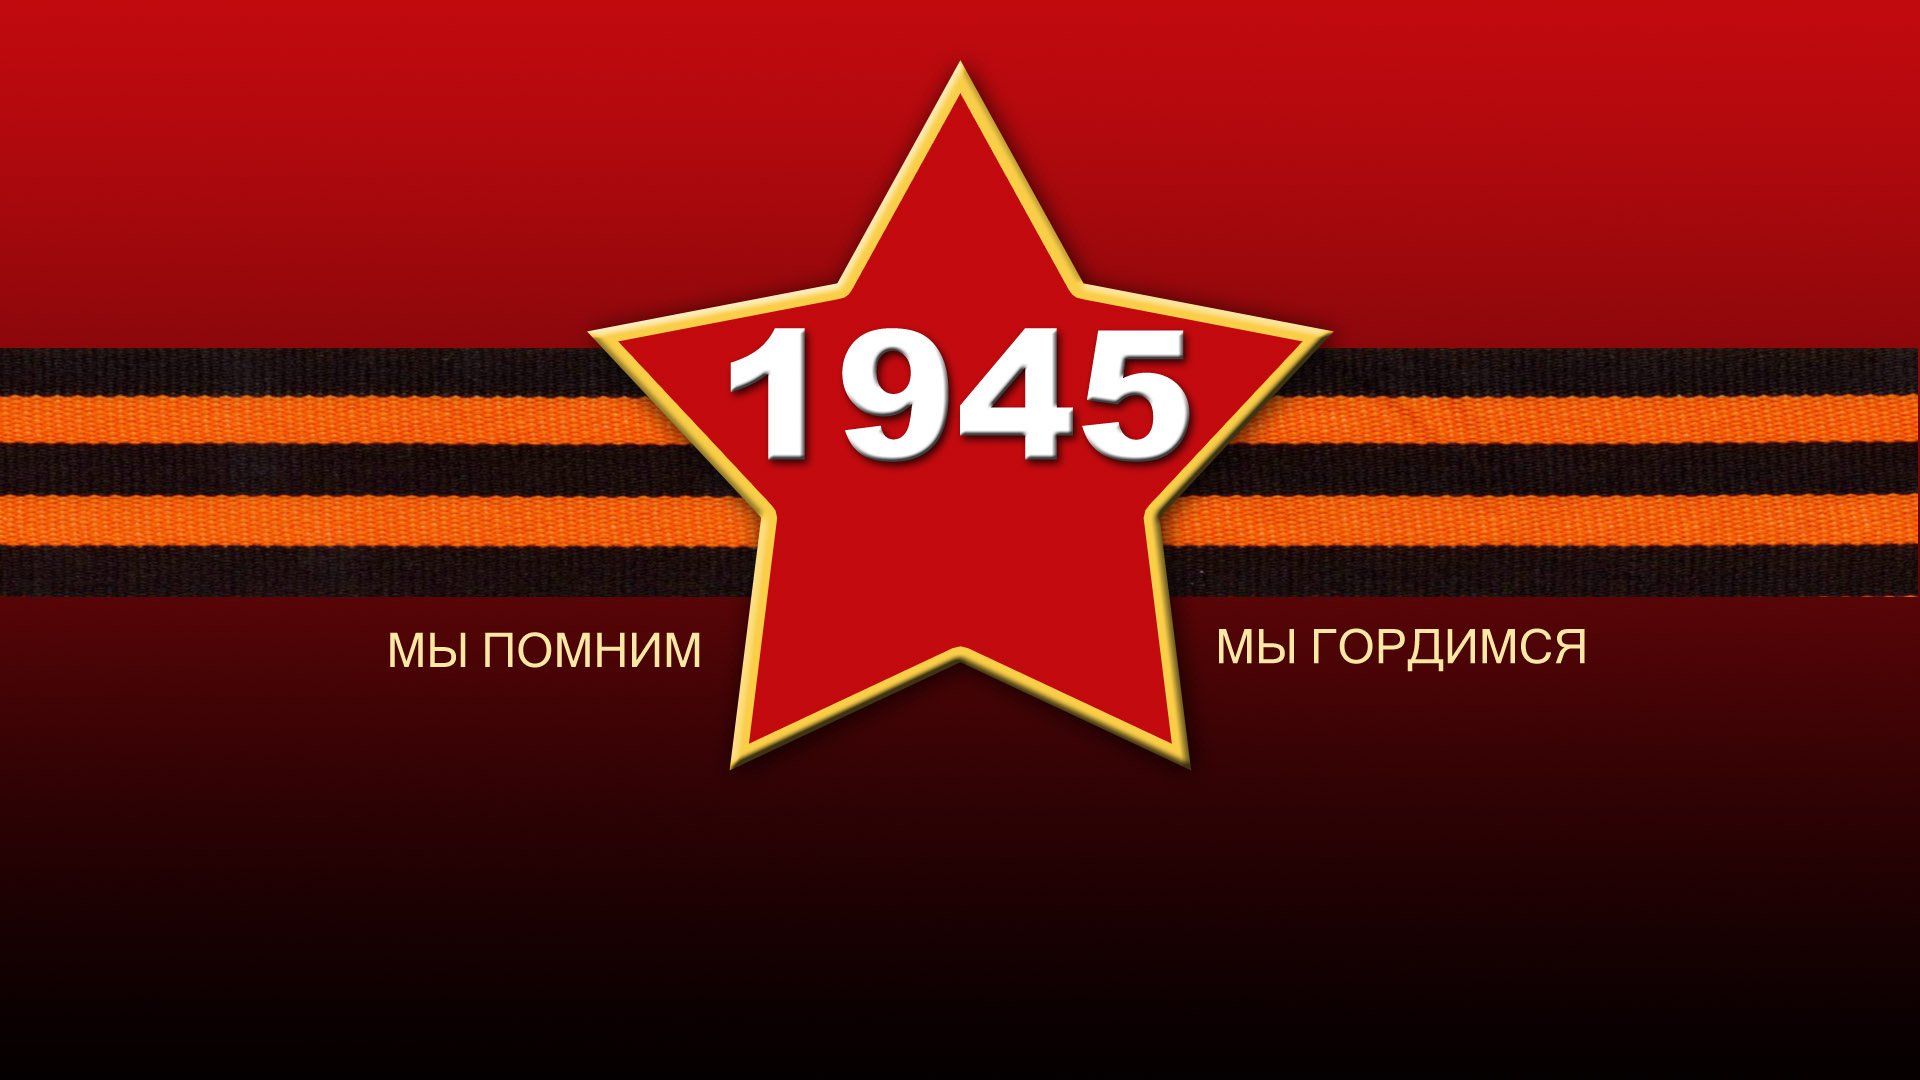 Картинка на день победы. 1945 в звезде с георгиевской лентой